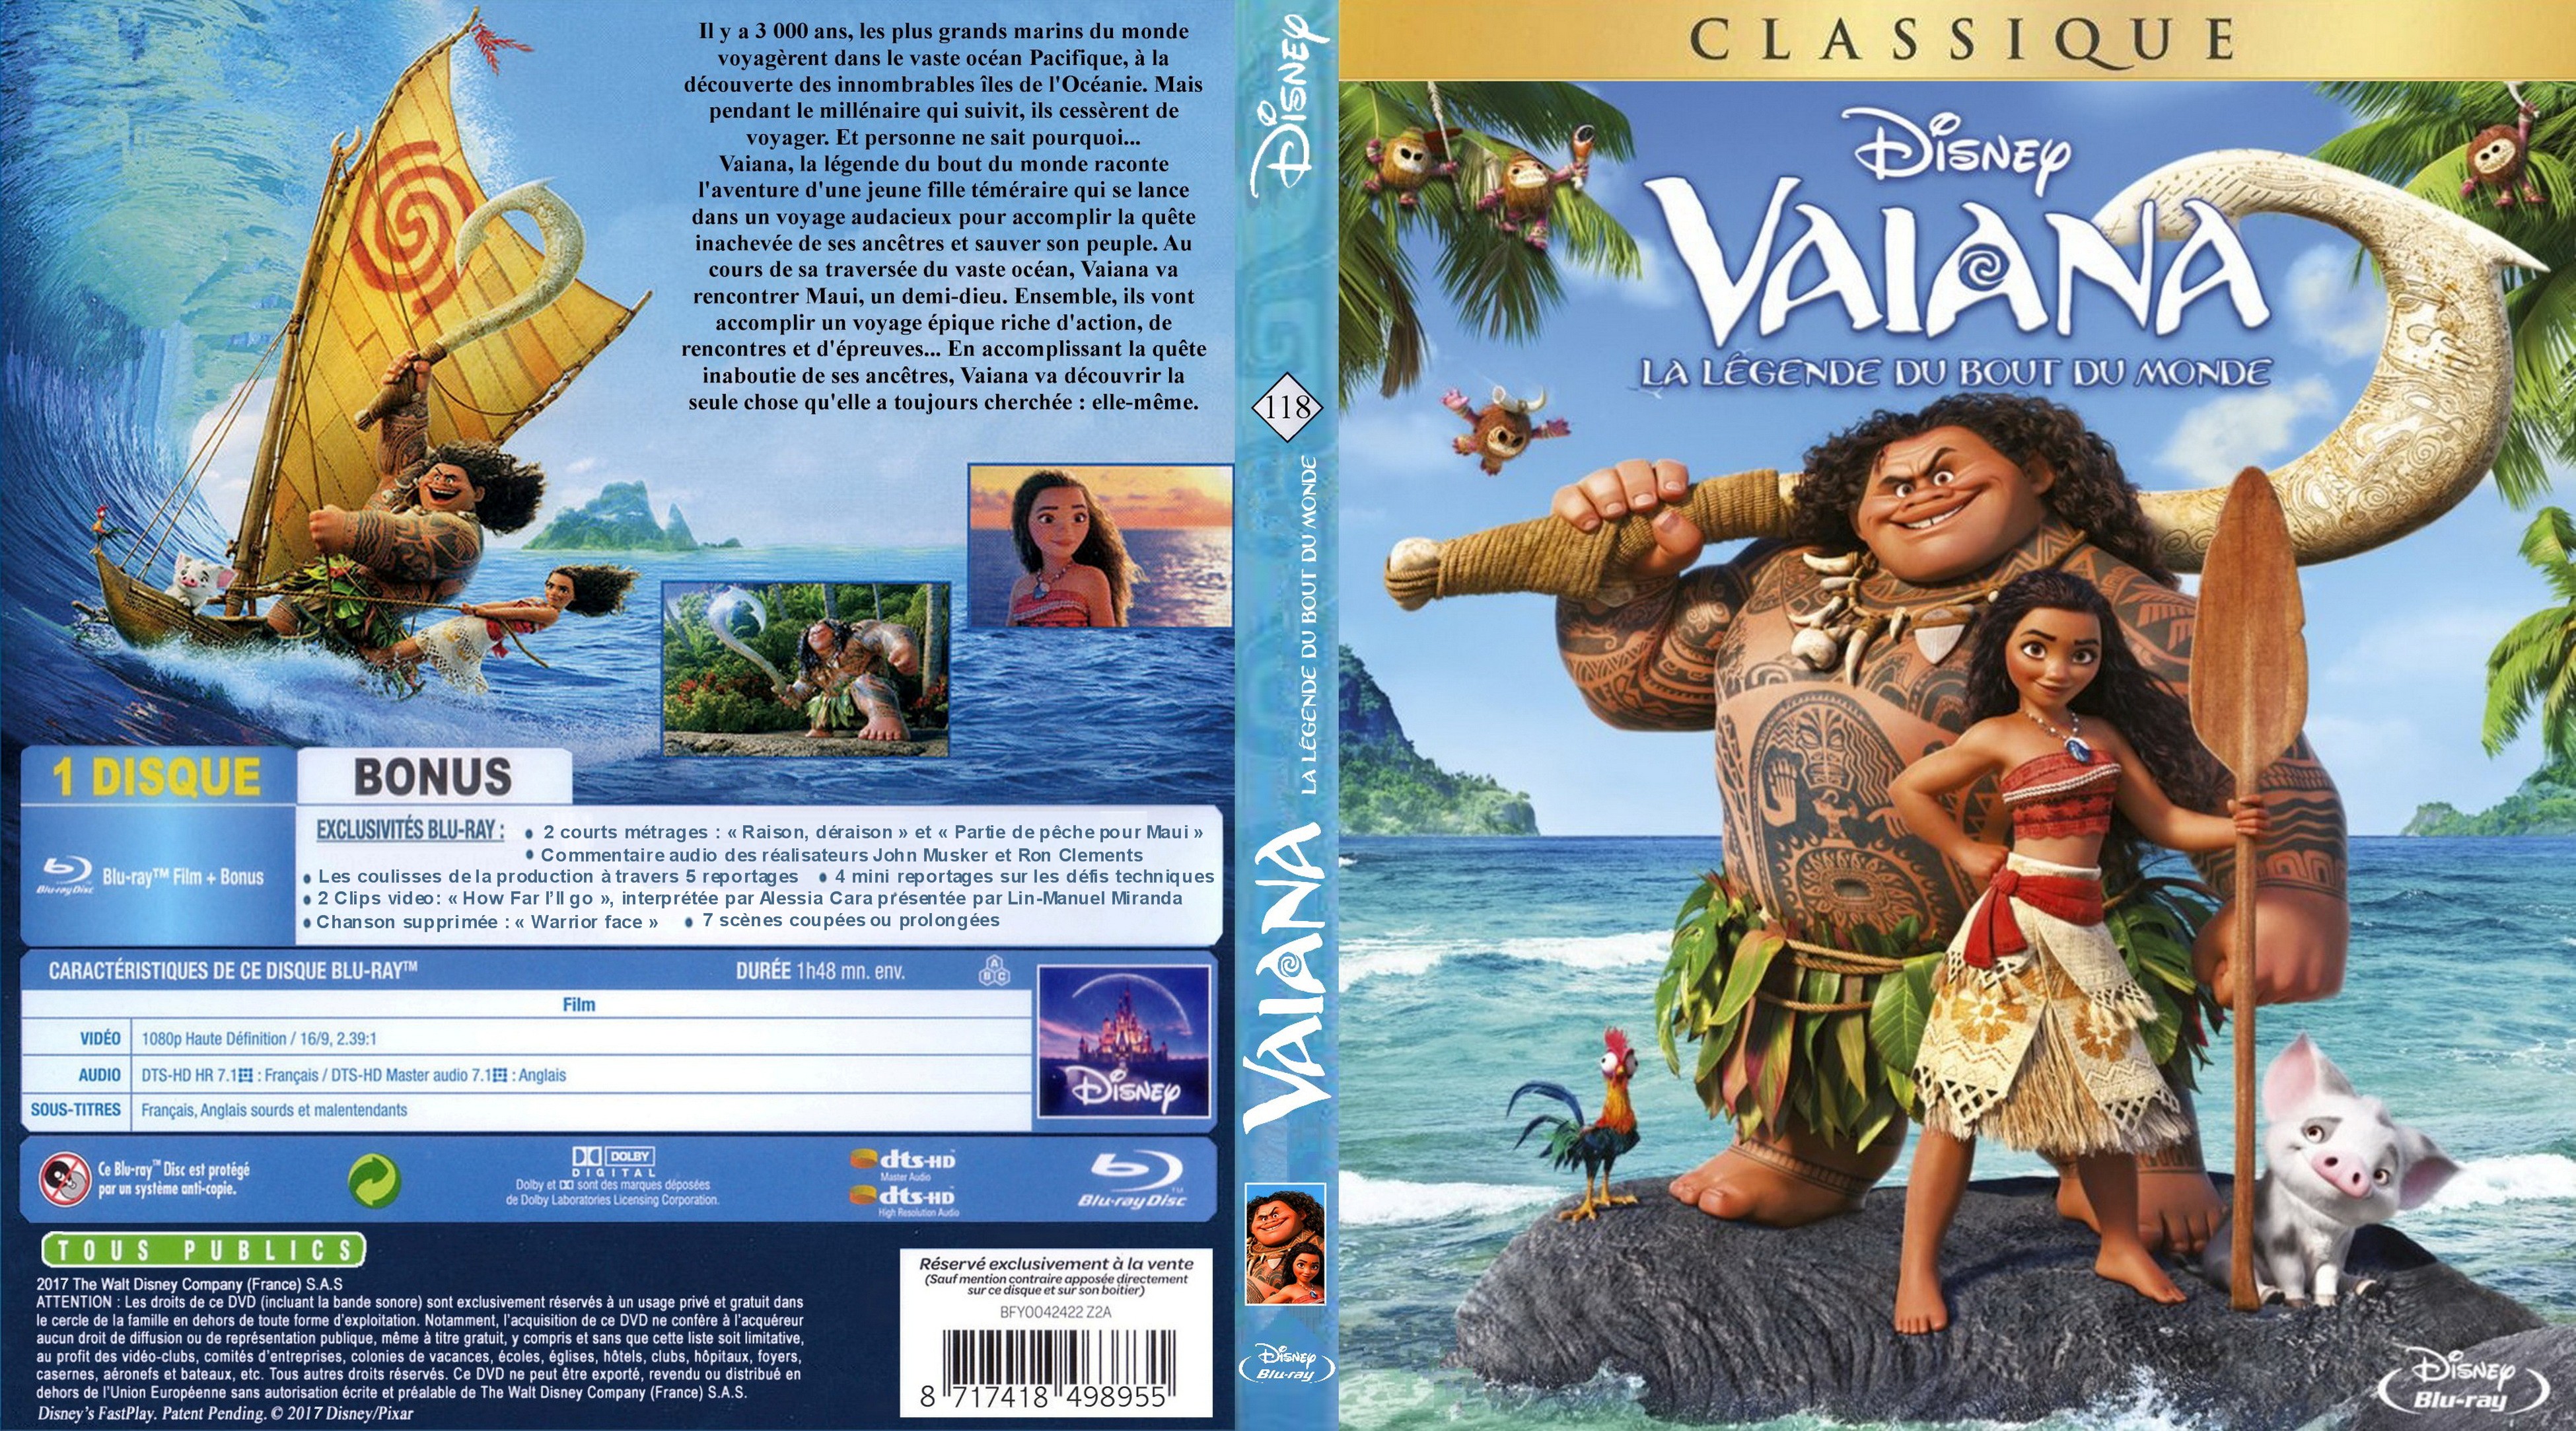 Jaquette DVD Vaiana, la lgende du bout du monde (BLU-RAY)